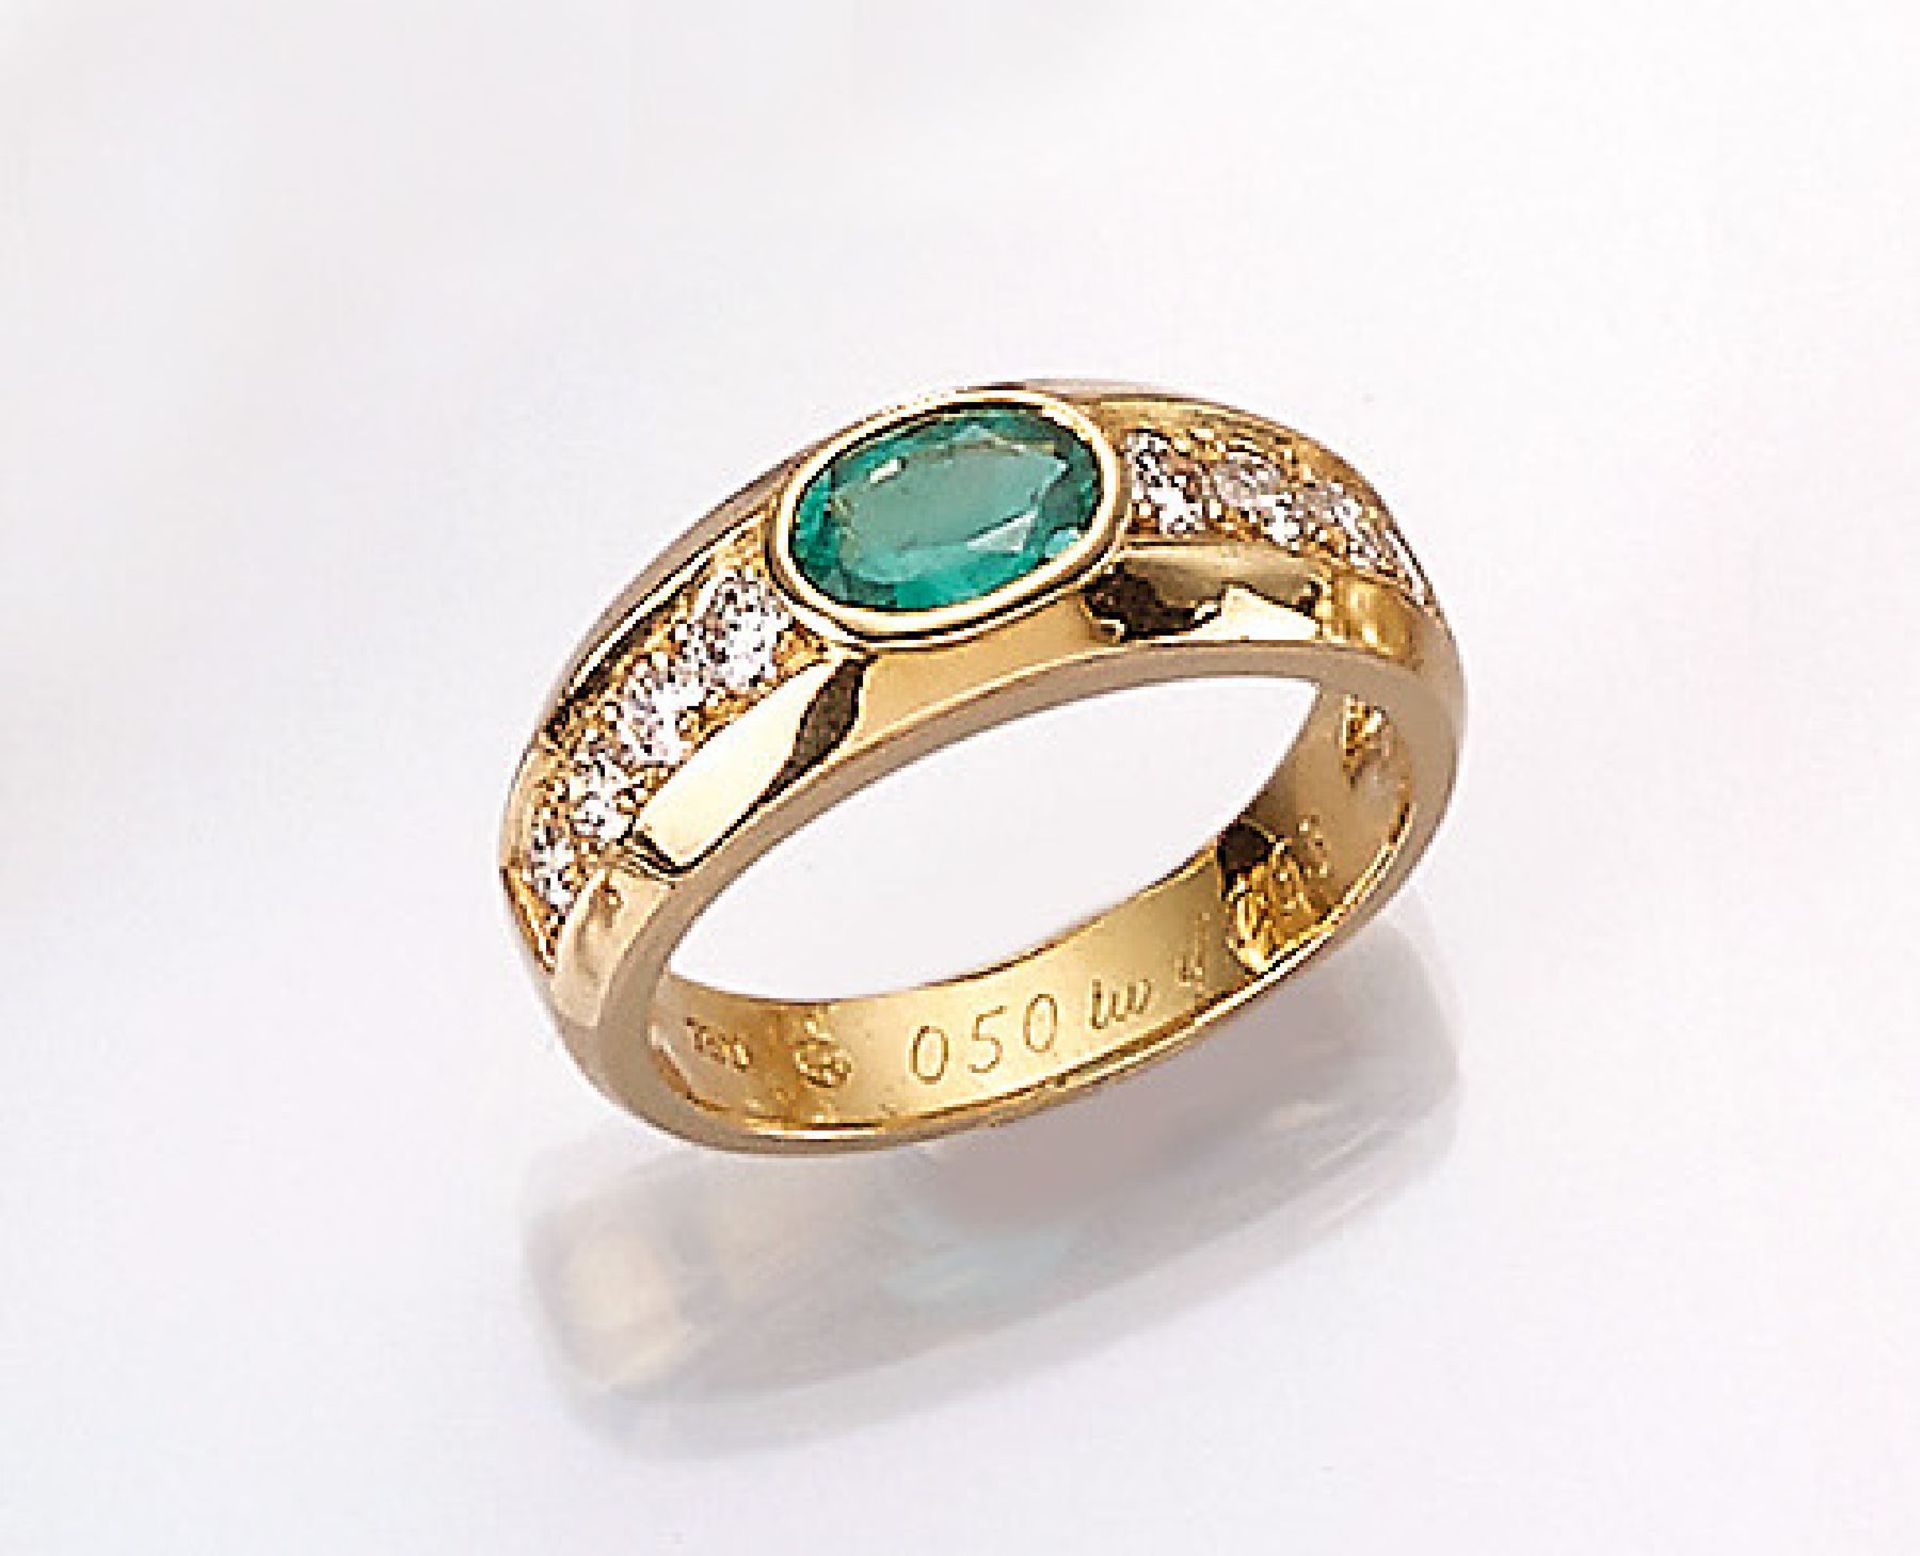 18 kt Gold Ring mit Smaragd und Brillanten, GG 750/000, ovalfacett. Smaragd ca. 0.80 ct, 8